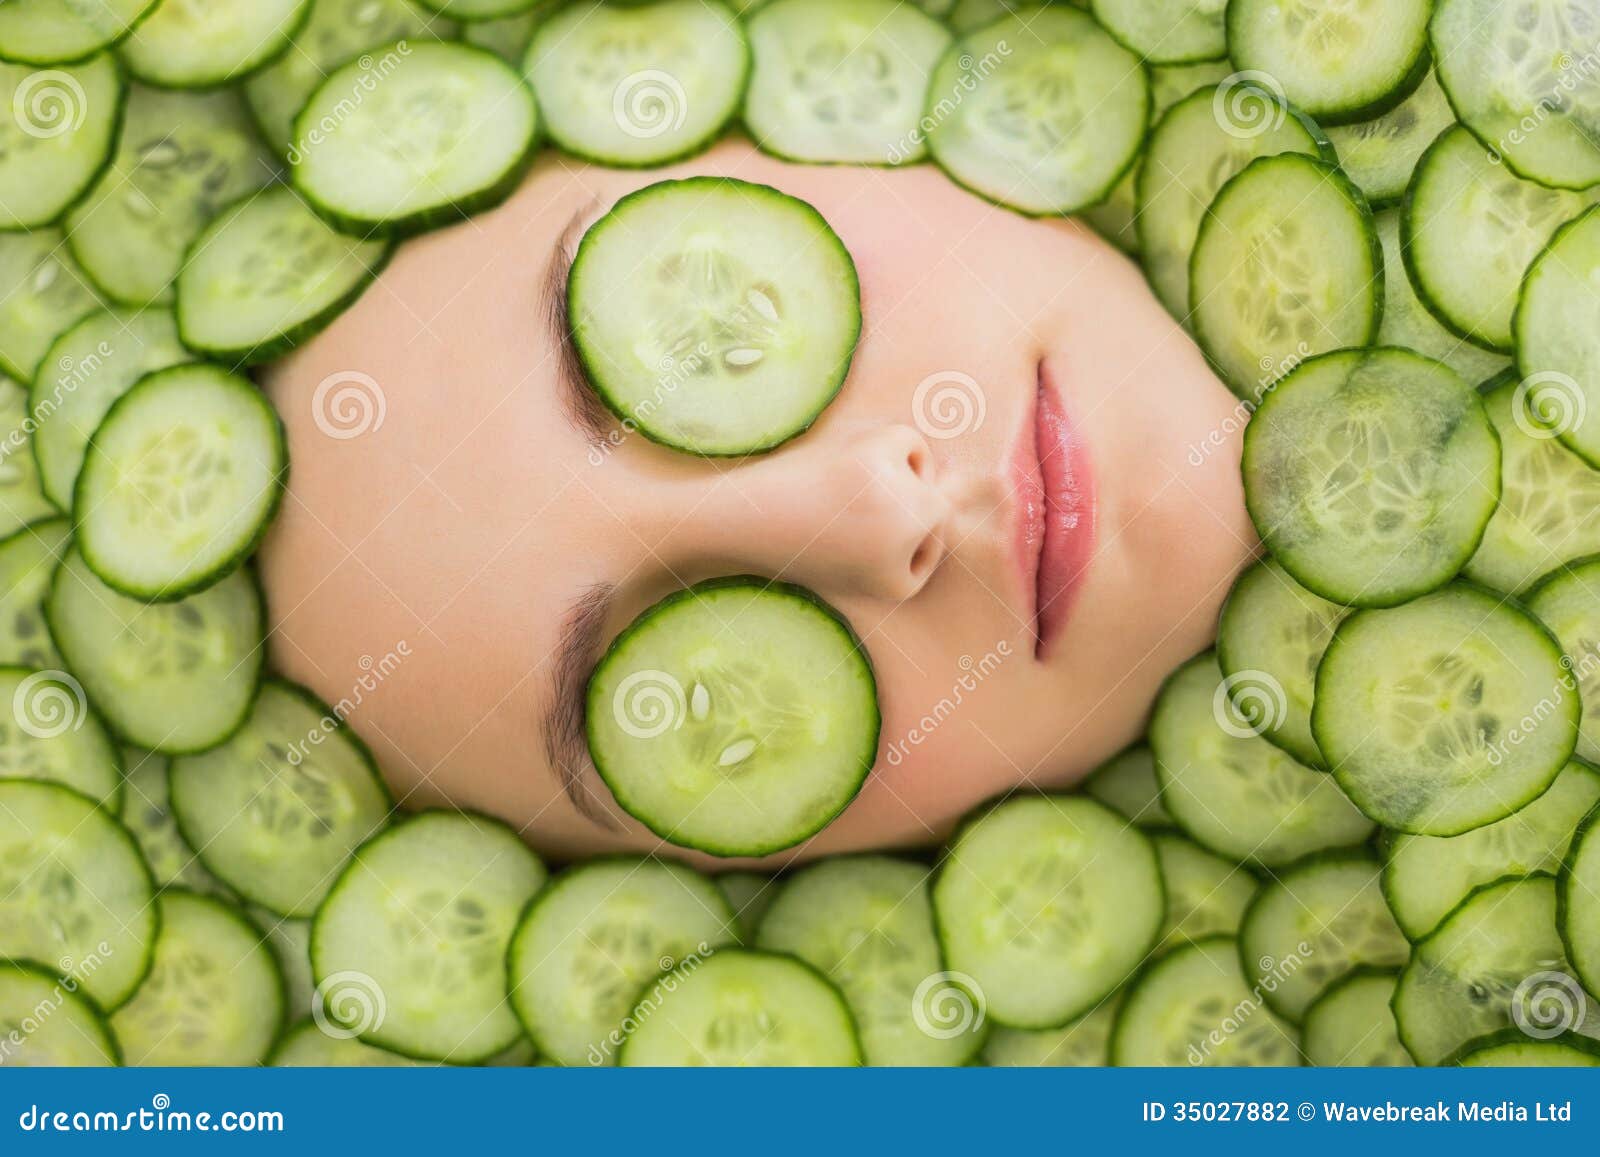 Facial Cucumber 113